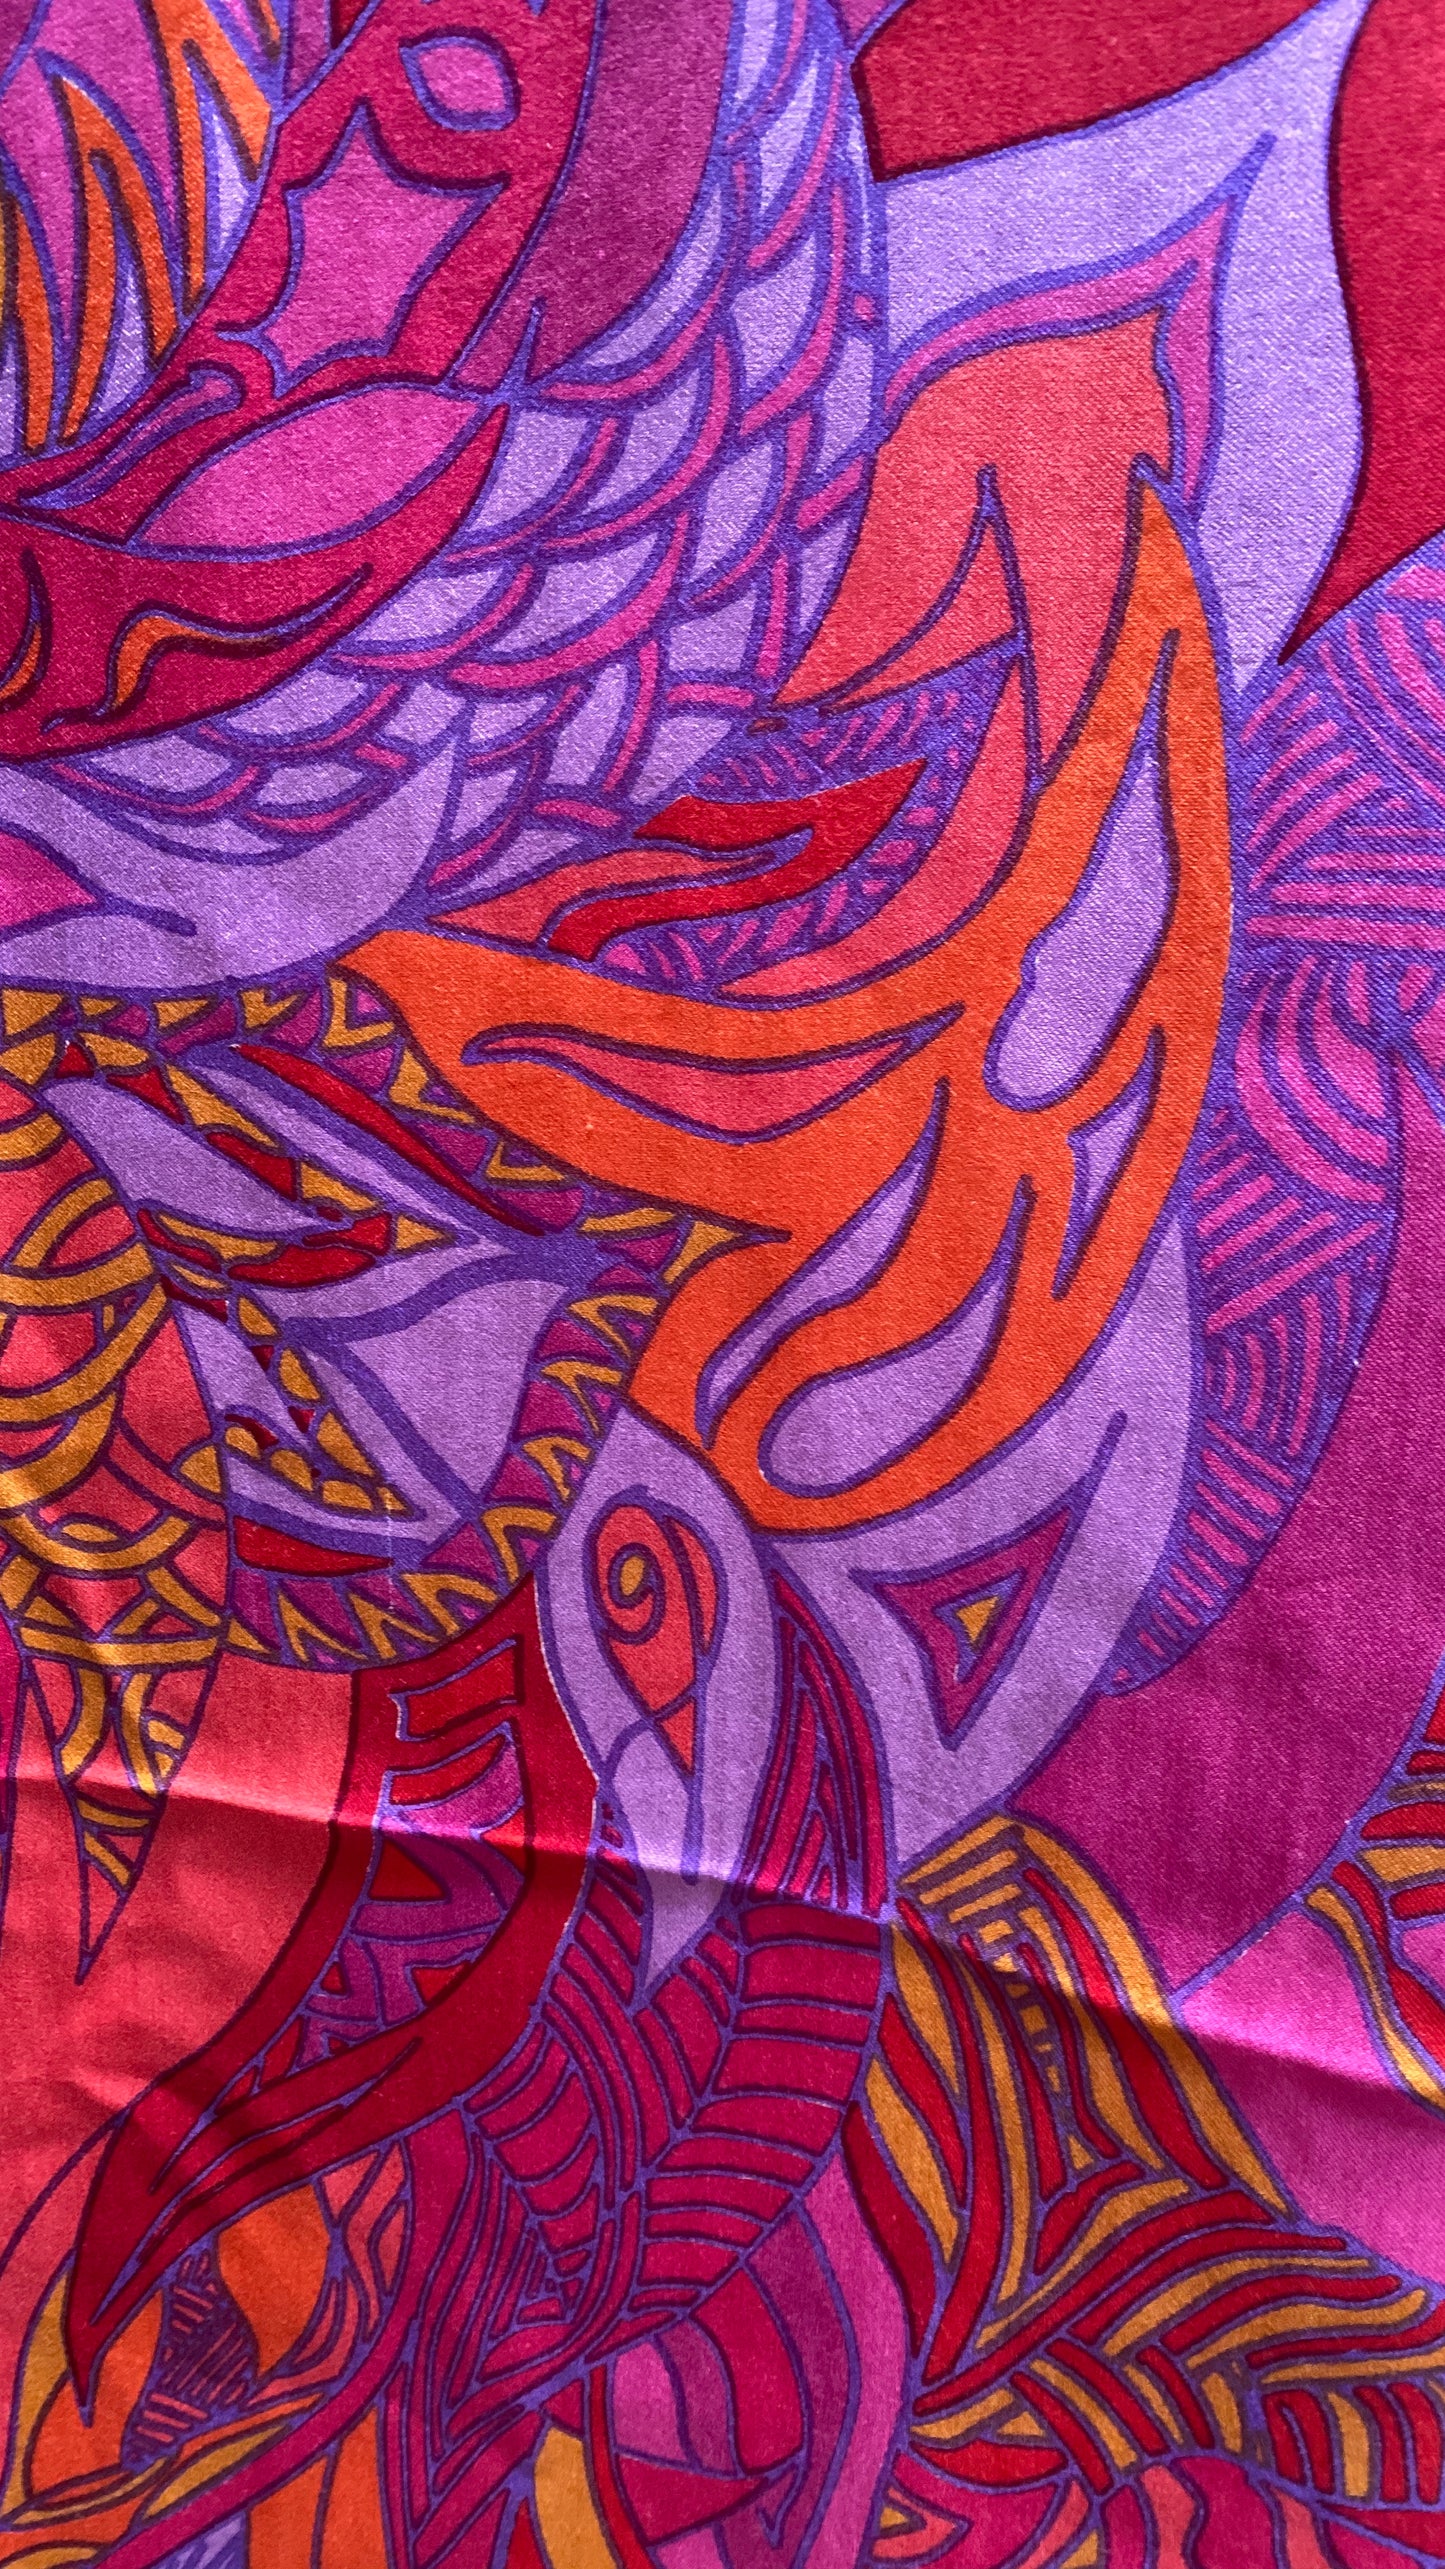 "WILD LIFE" Kaschmir/Seide Tuch 150x150  - 100% feinstes Kaschmir & Rückseite  hochwertige Twill Seide Limited Edition #3 von 3 - Handgefertigt - Doubleface - auf Seidentwill bedrucktes Motiv - Rot Orange Pink